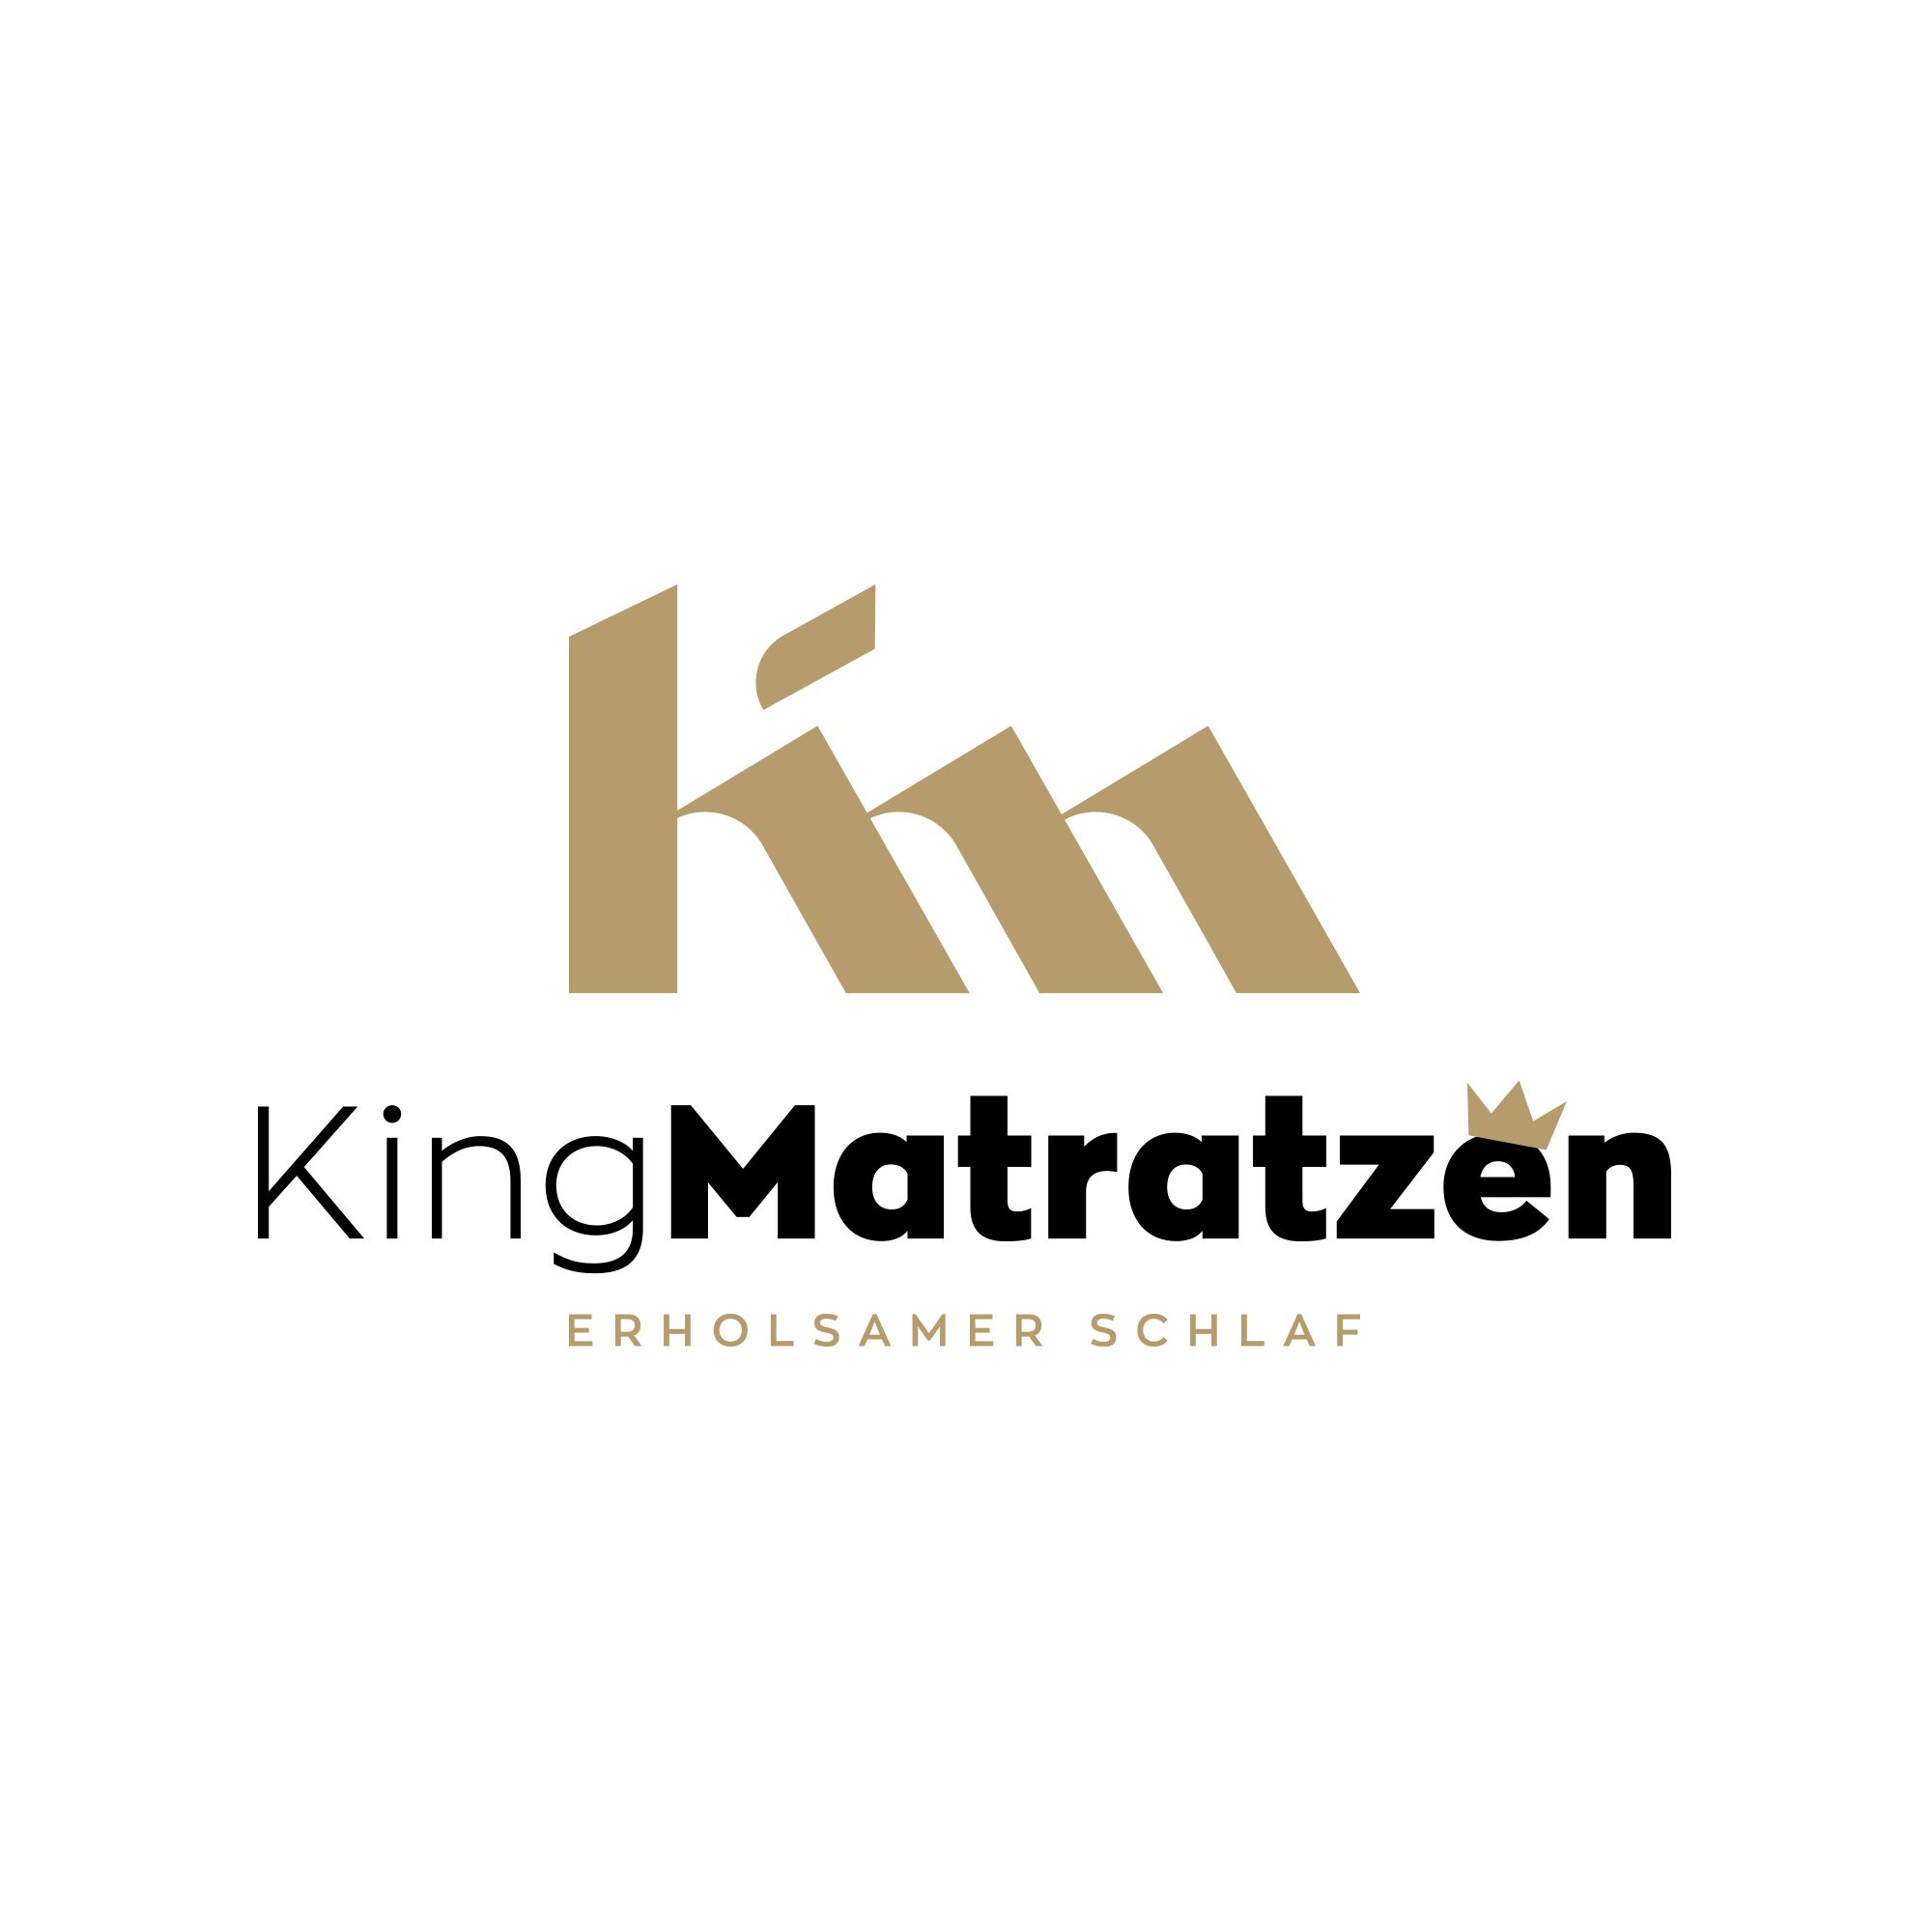 KingMatratzen